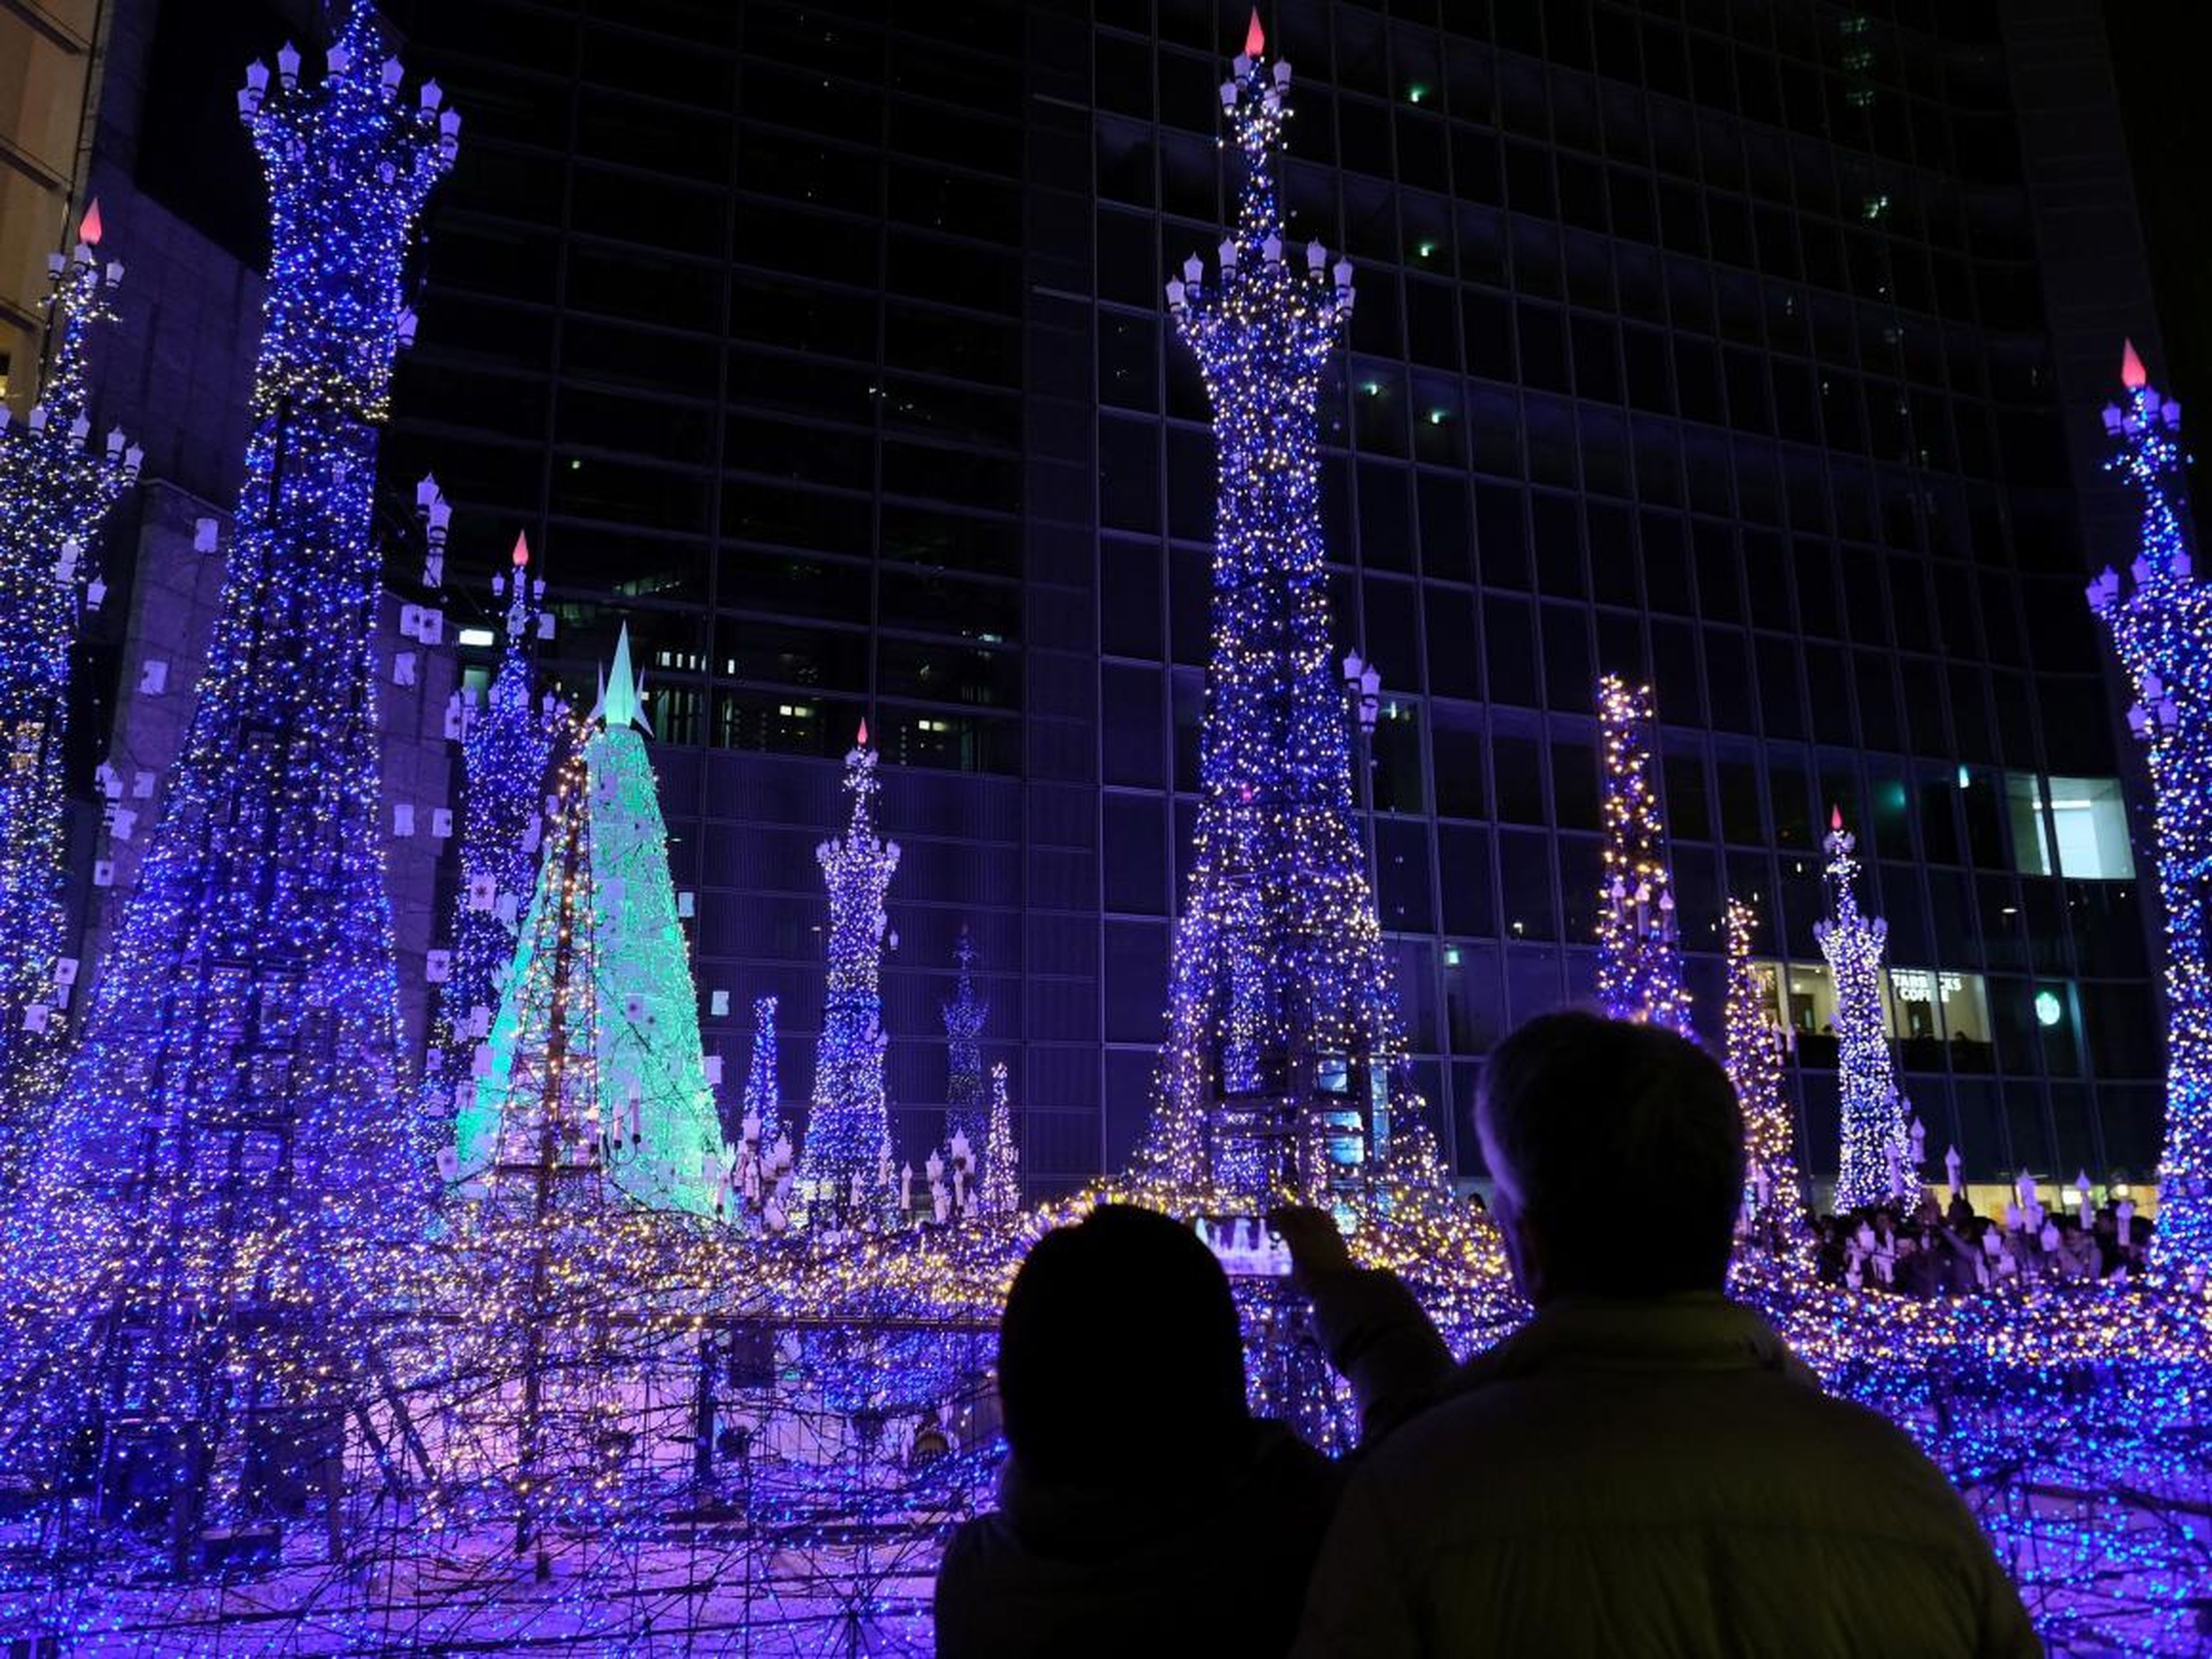 Los turistas admiran las iluminaciones basadas en populares películas animadas de Disney para la temporada de invierno en el centro de iluminación de invierno Caretta Shiodome en Tokio el 16 de diciembre de 2018.